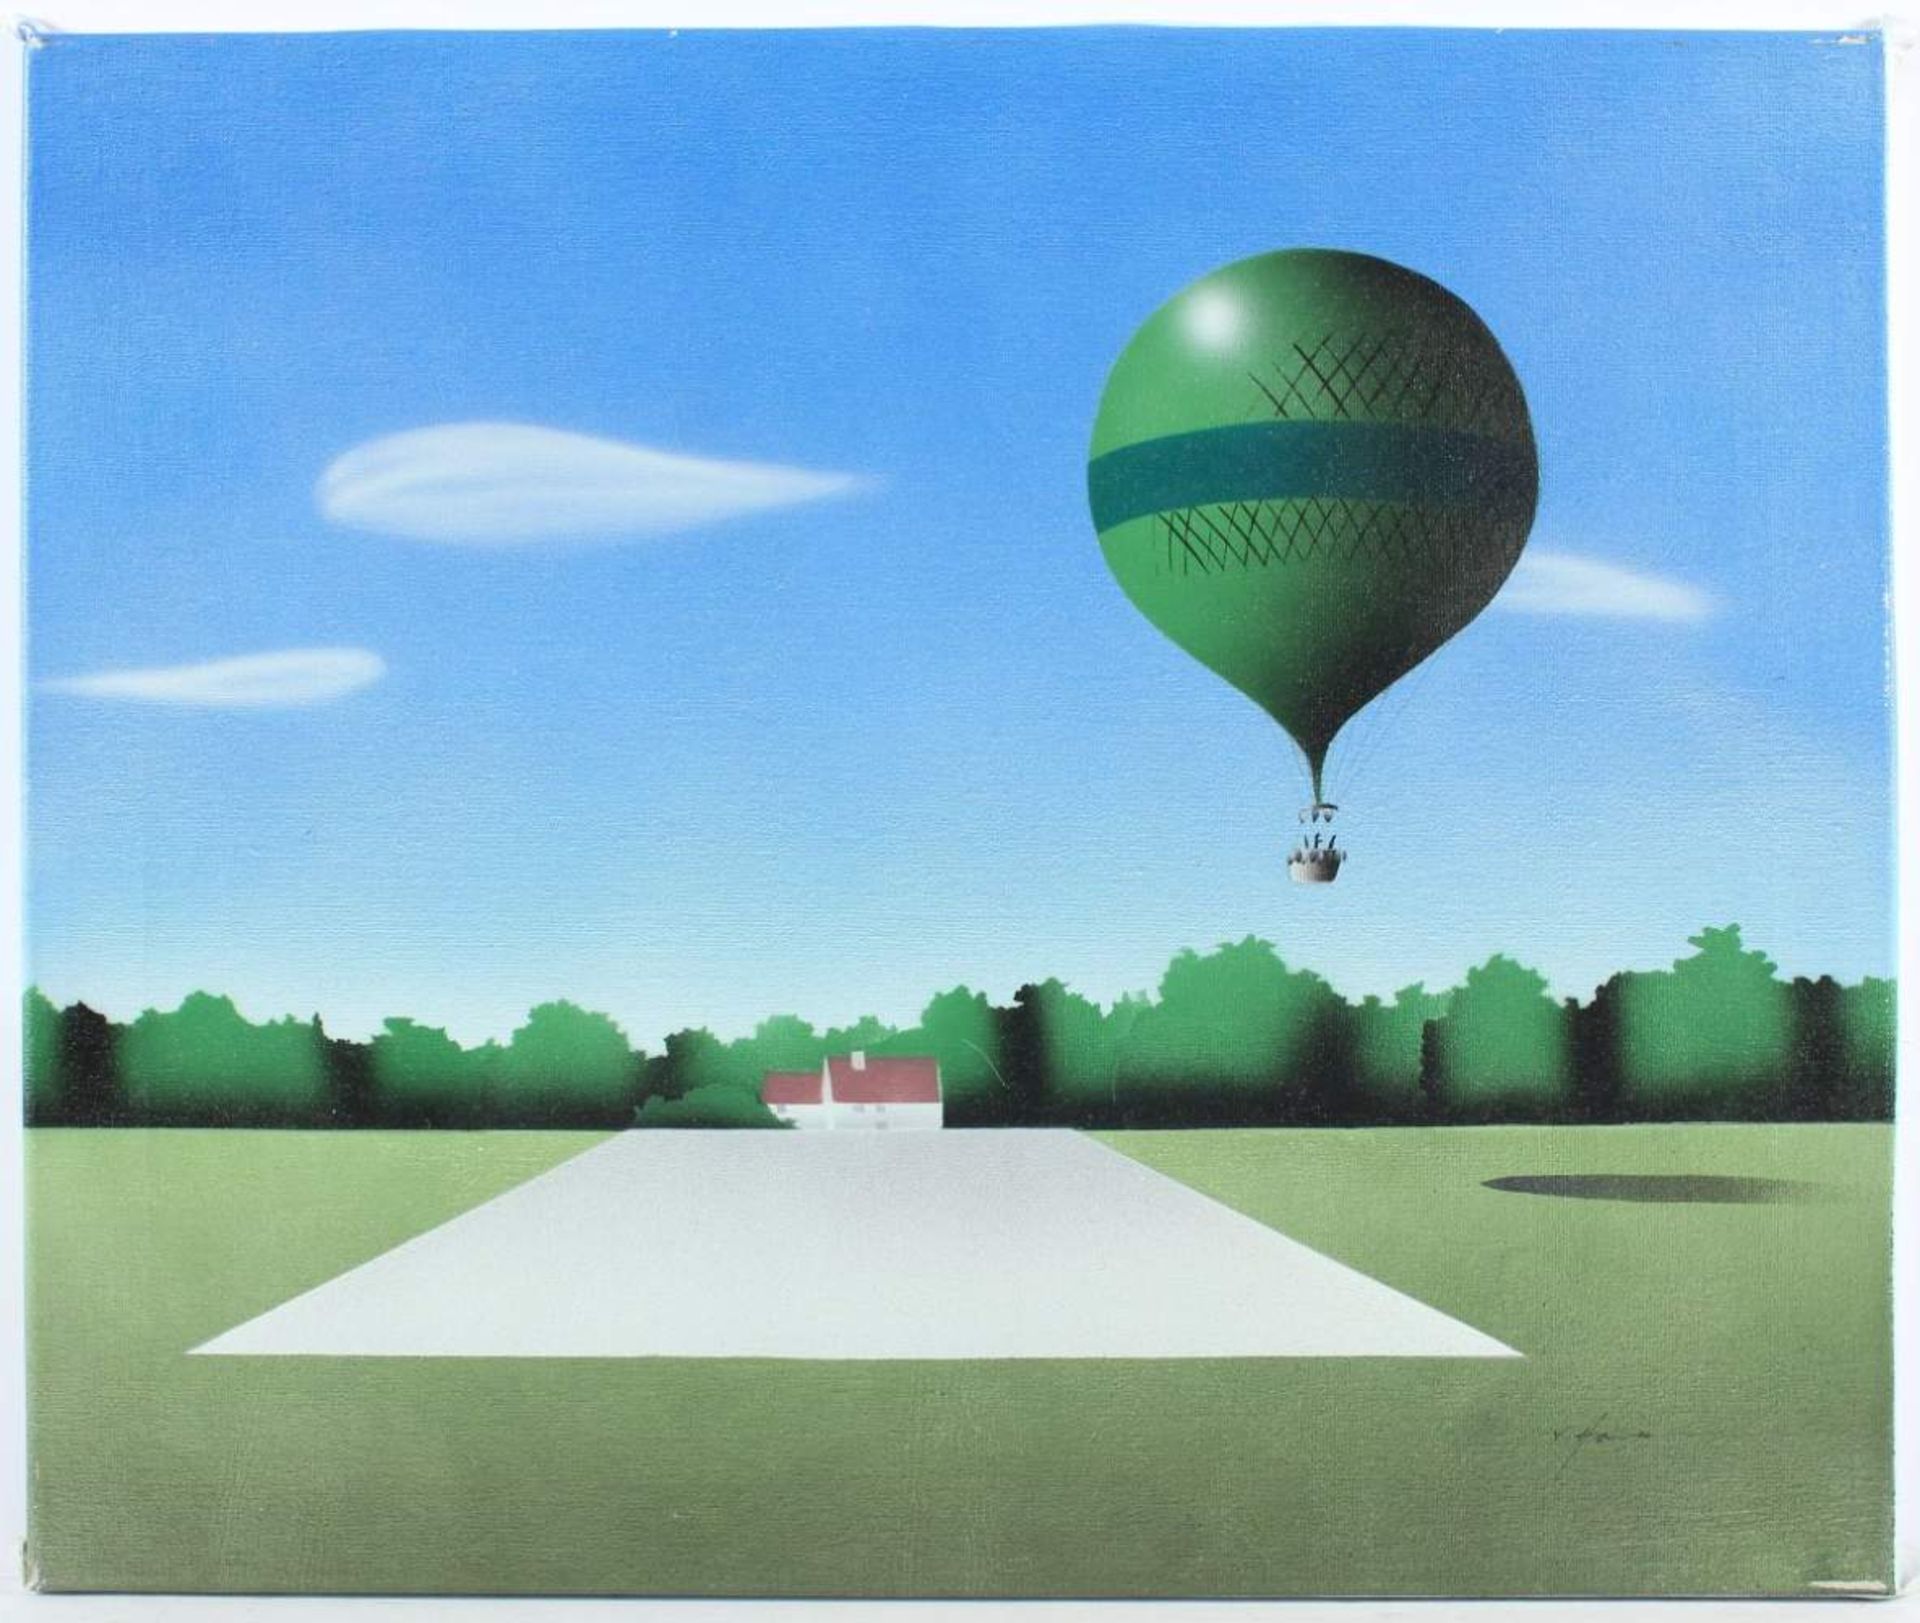 HAVEN, van, "Heißluftballon", Öl/Lwd., 50 x 60, unten rechts signiert - Image 2 of 2